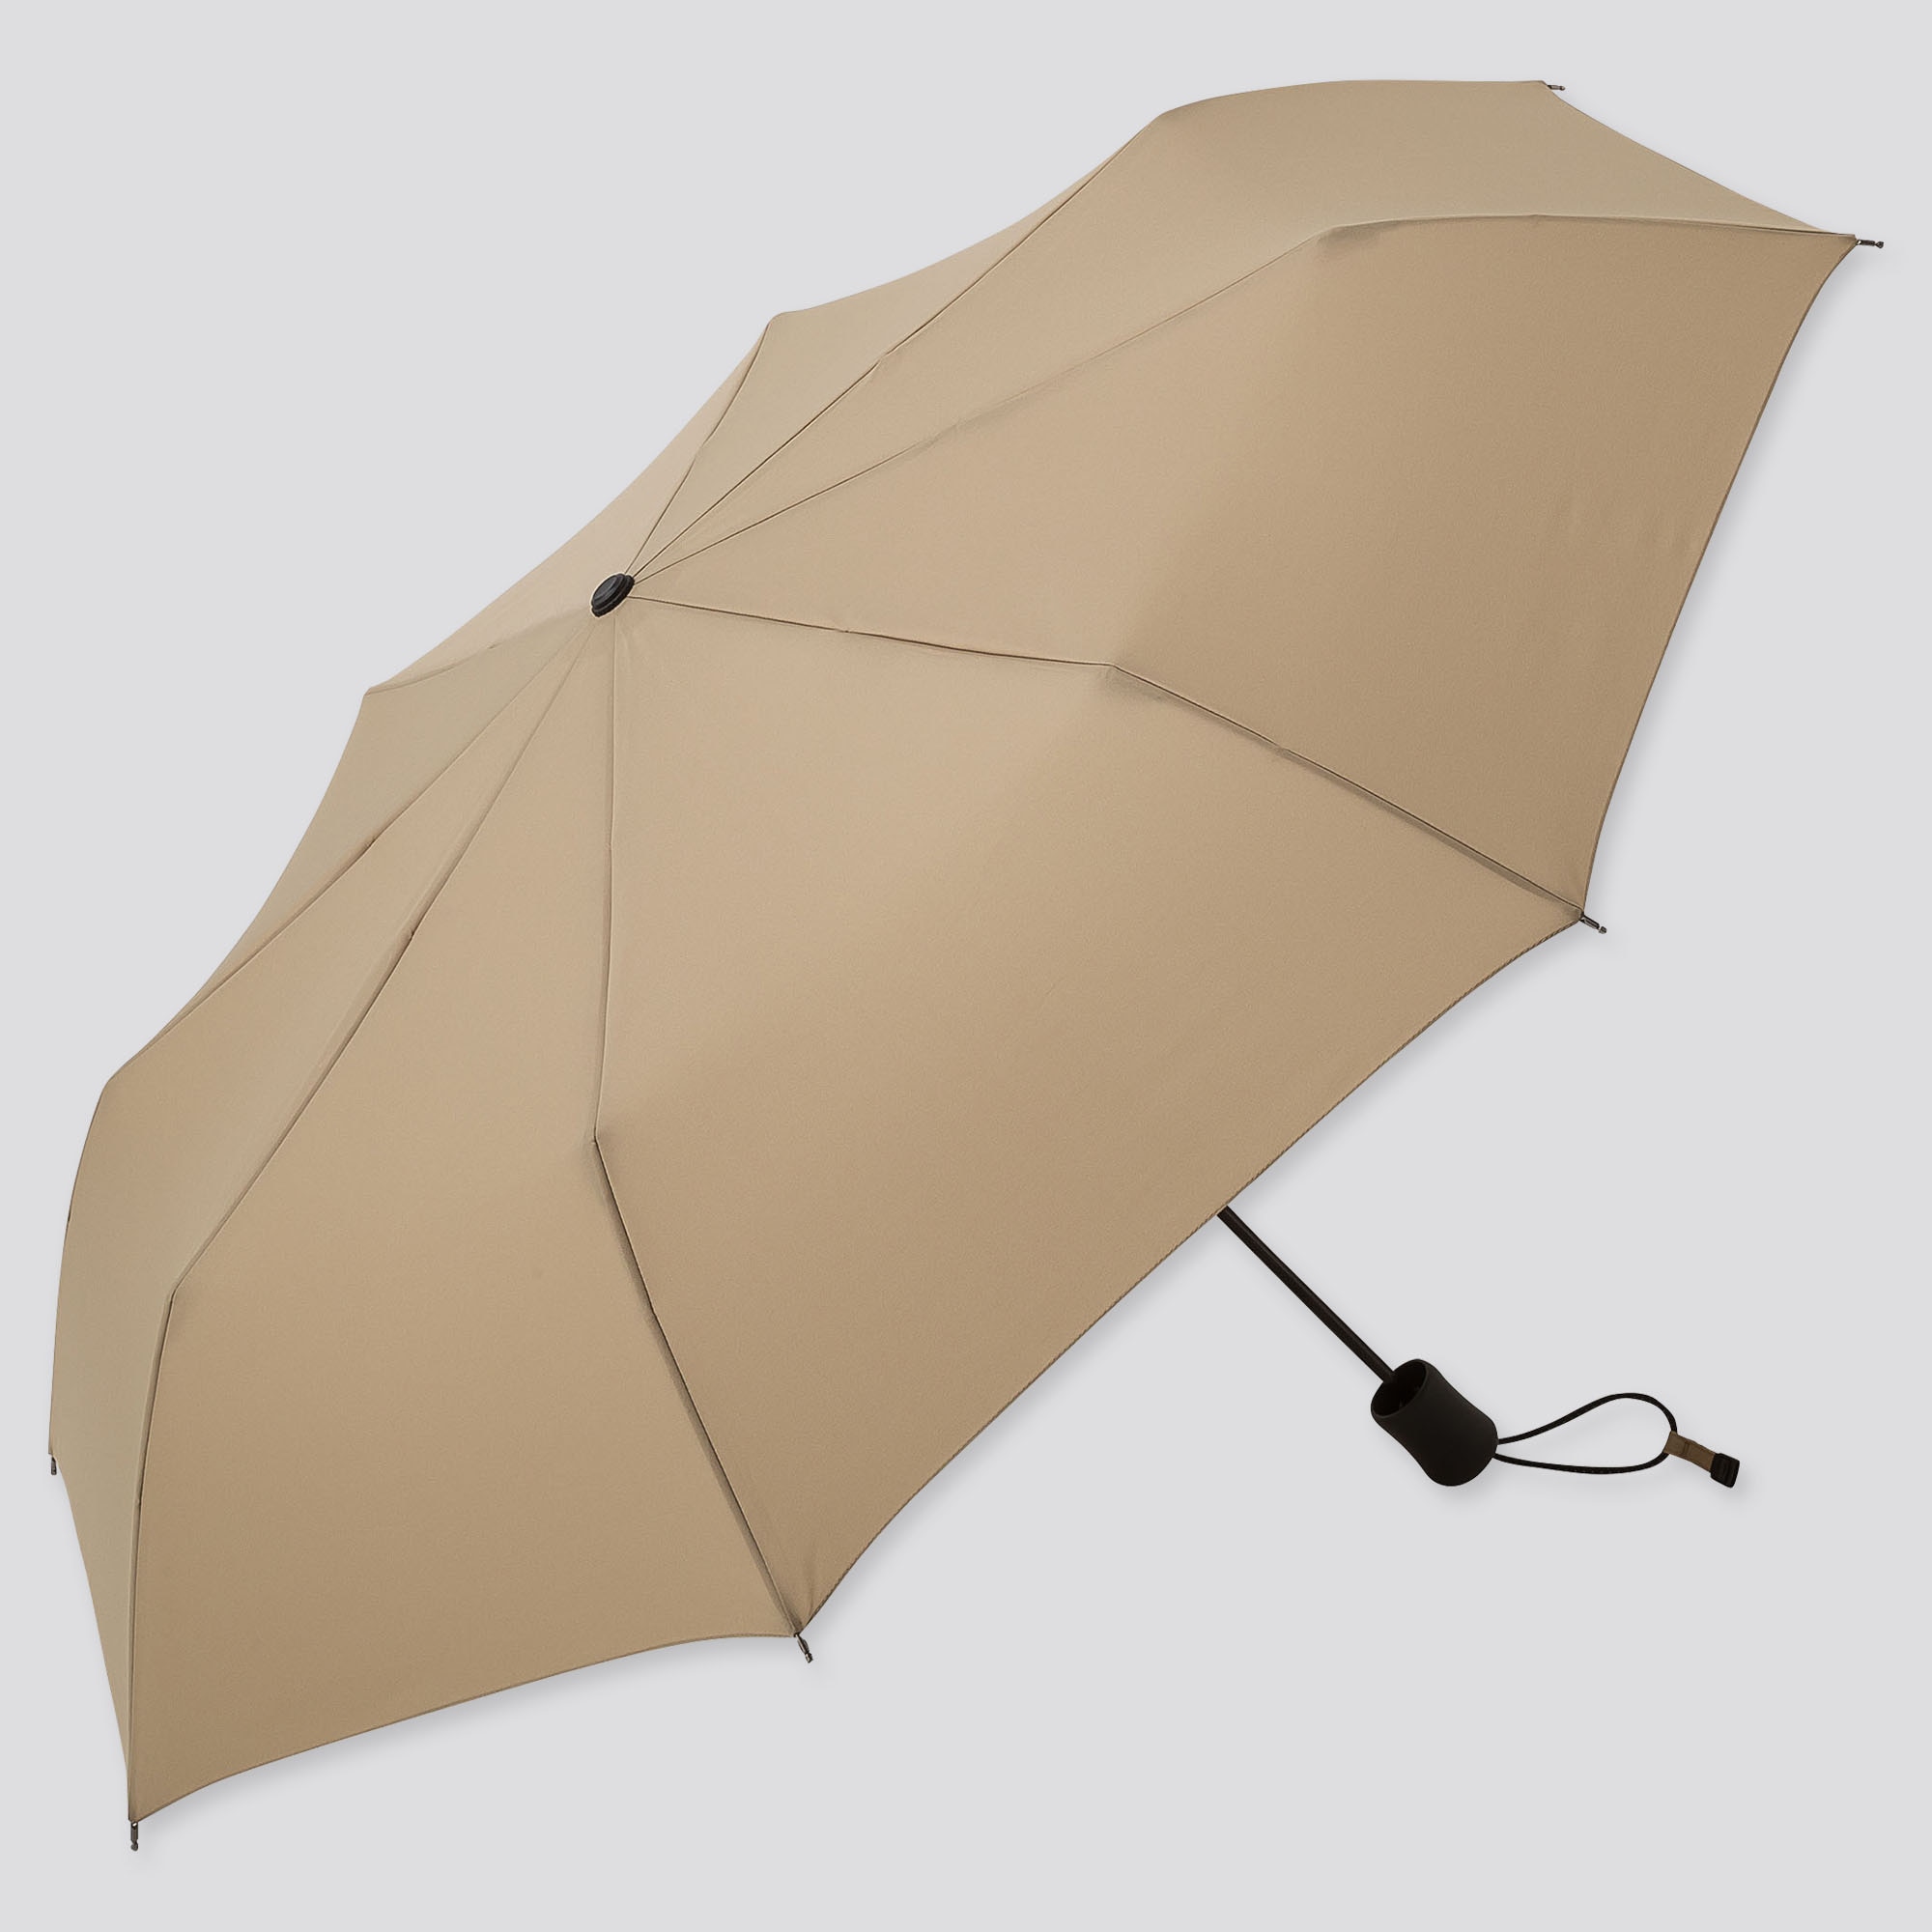 better umbrella compact